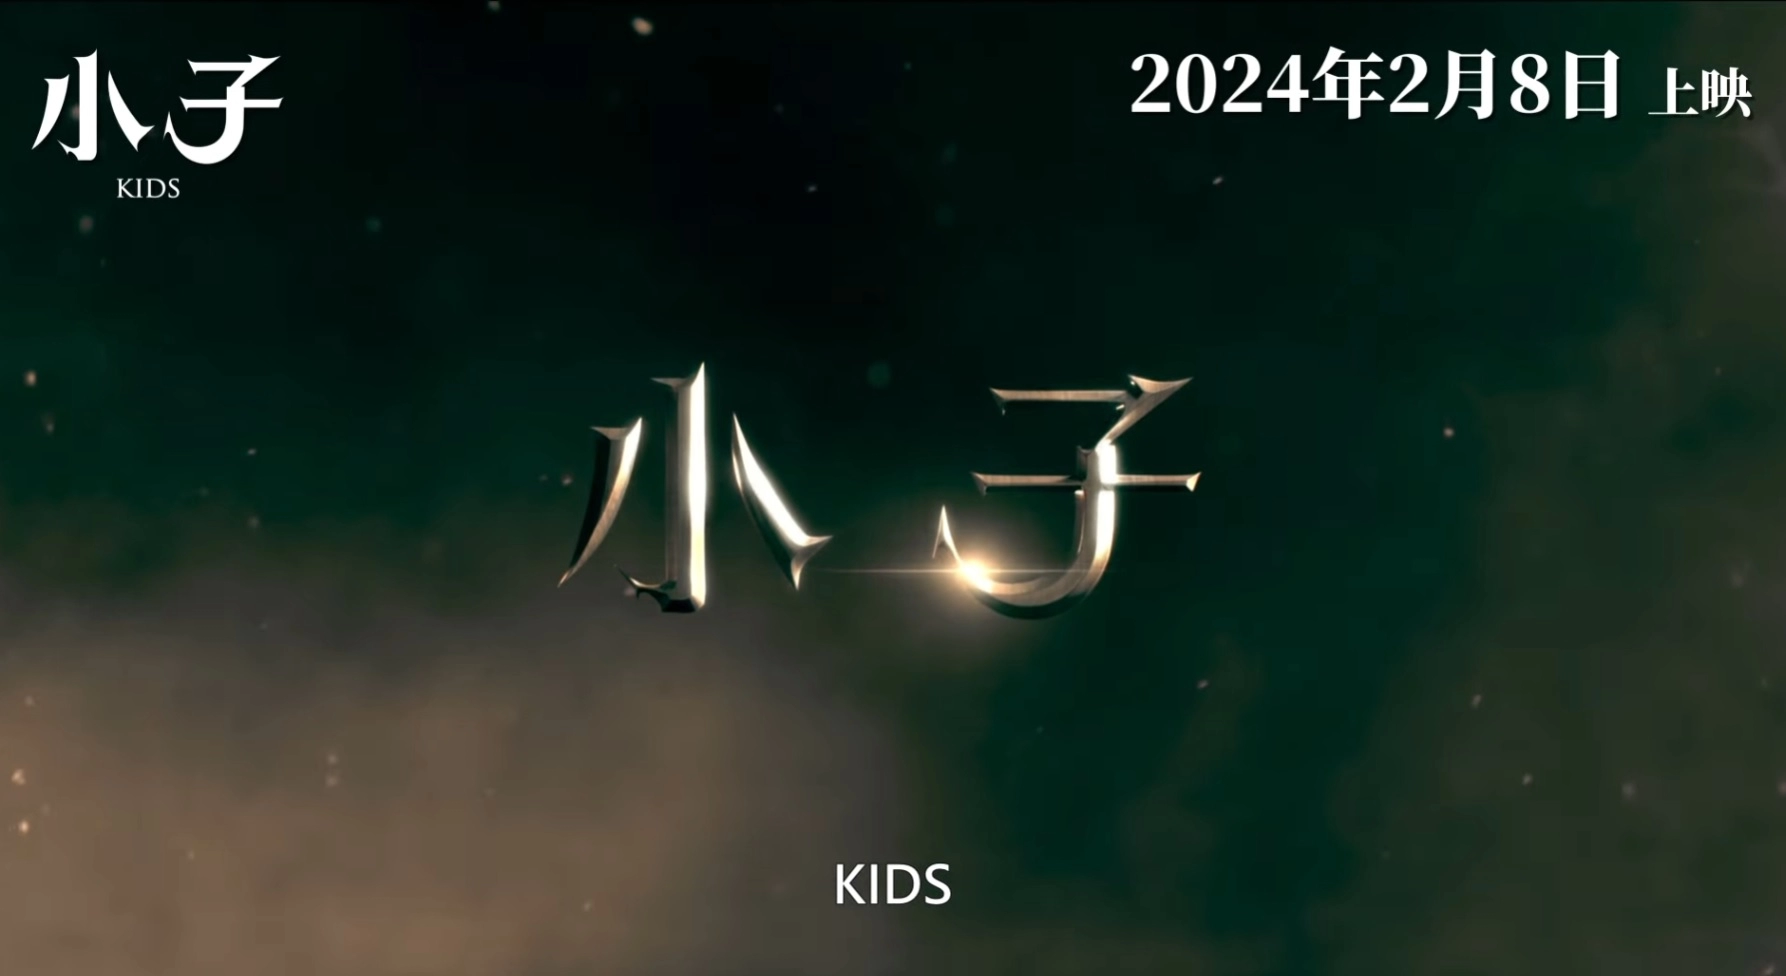 《小子KIDS》2024賀歲電影